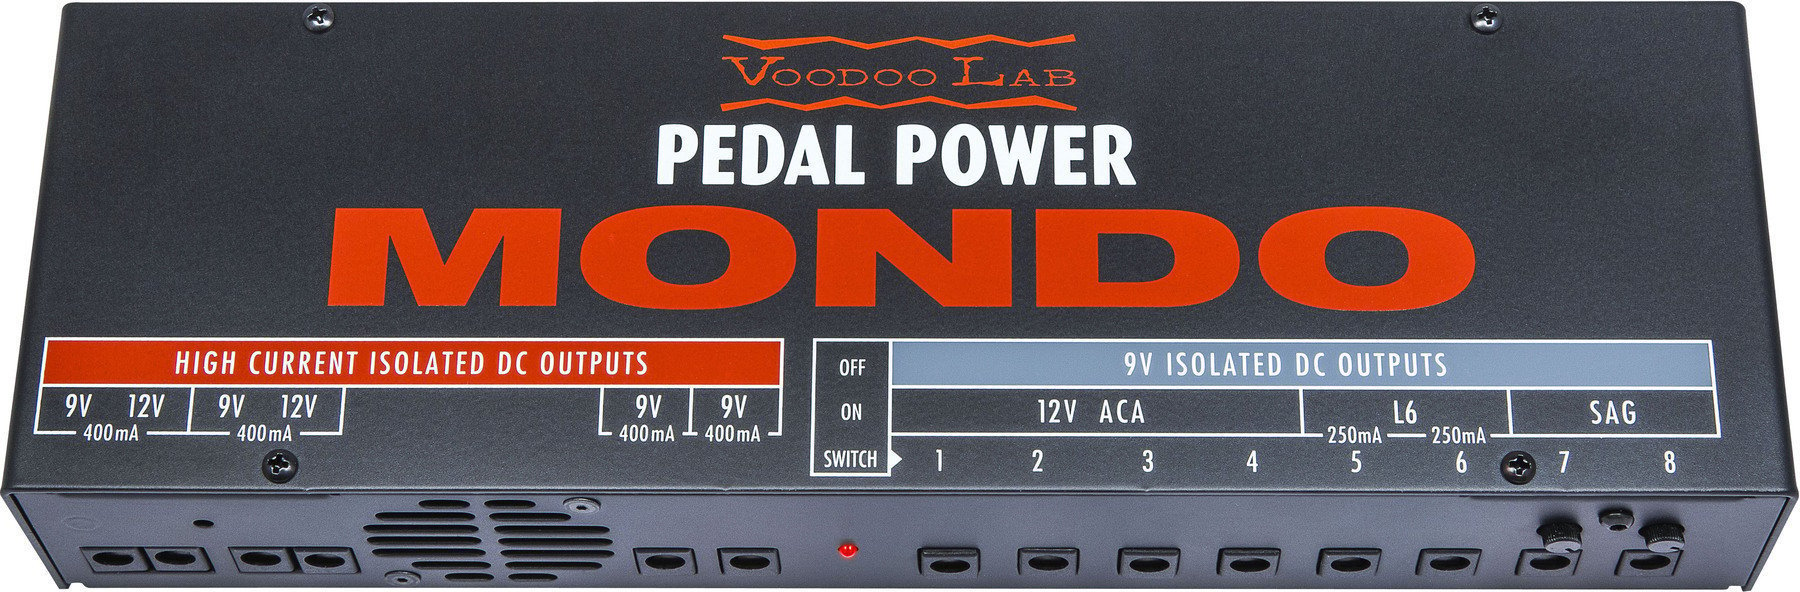 Netzteil Voodoo Lab Pedal Power Mondo